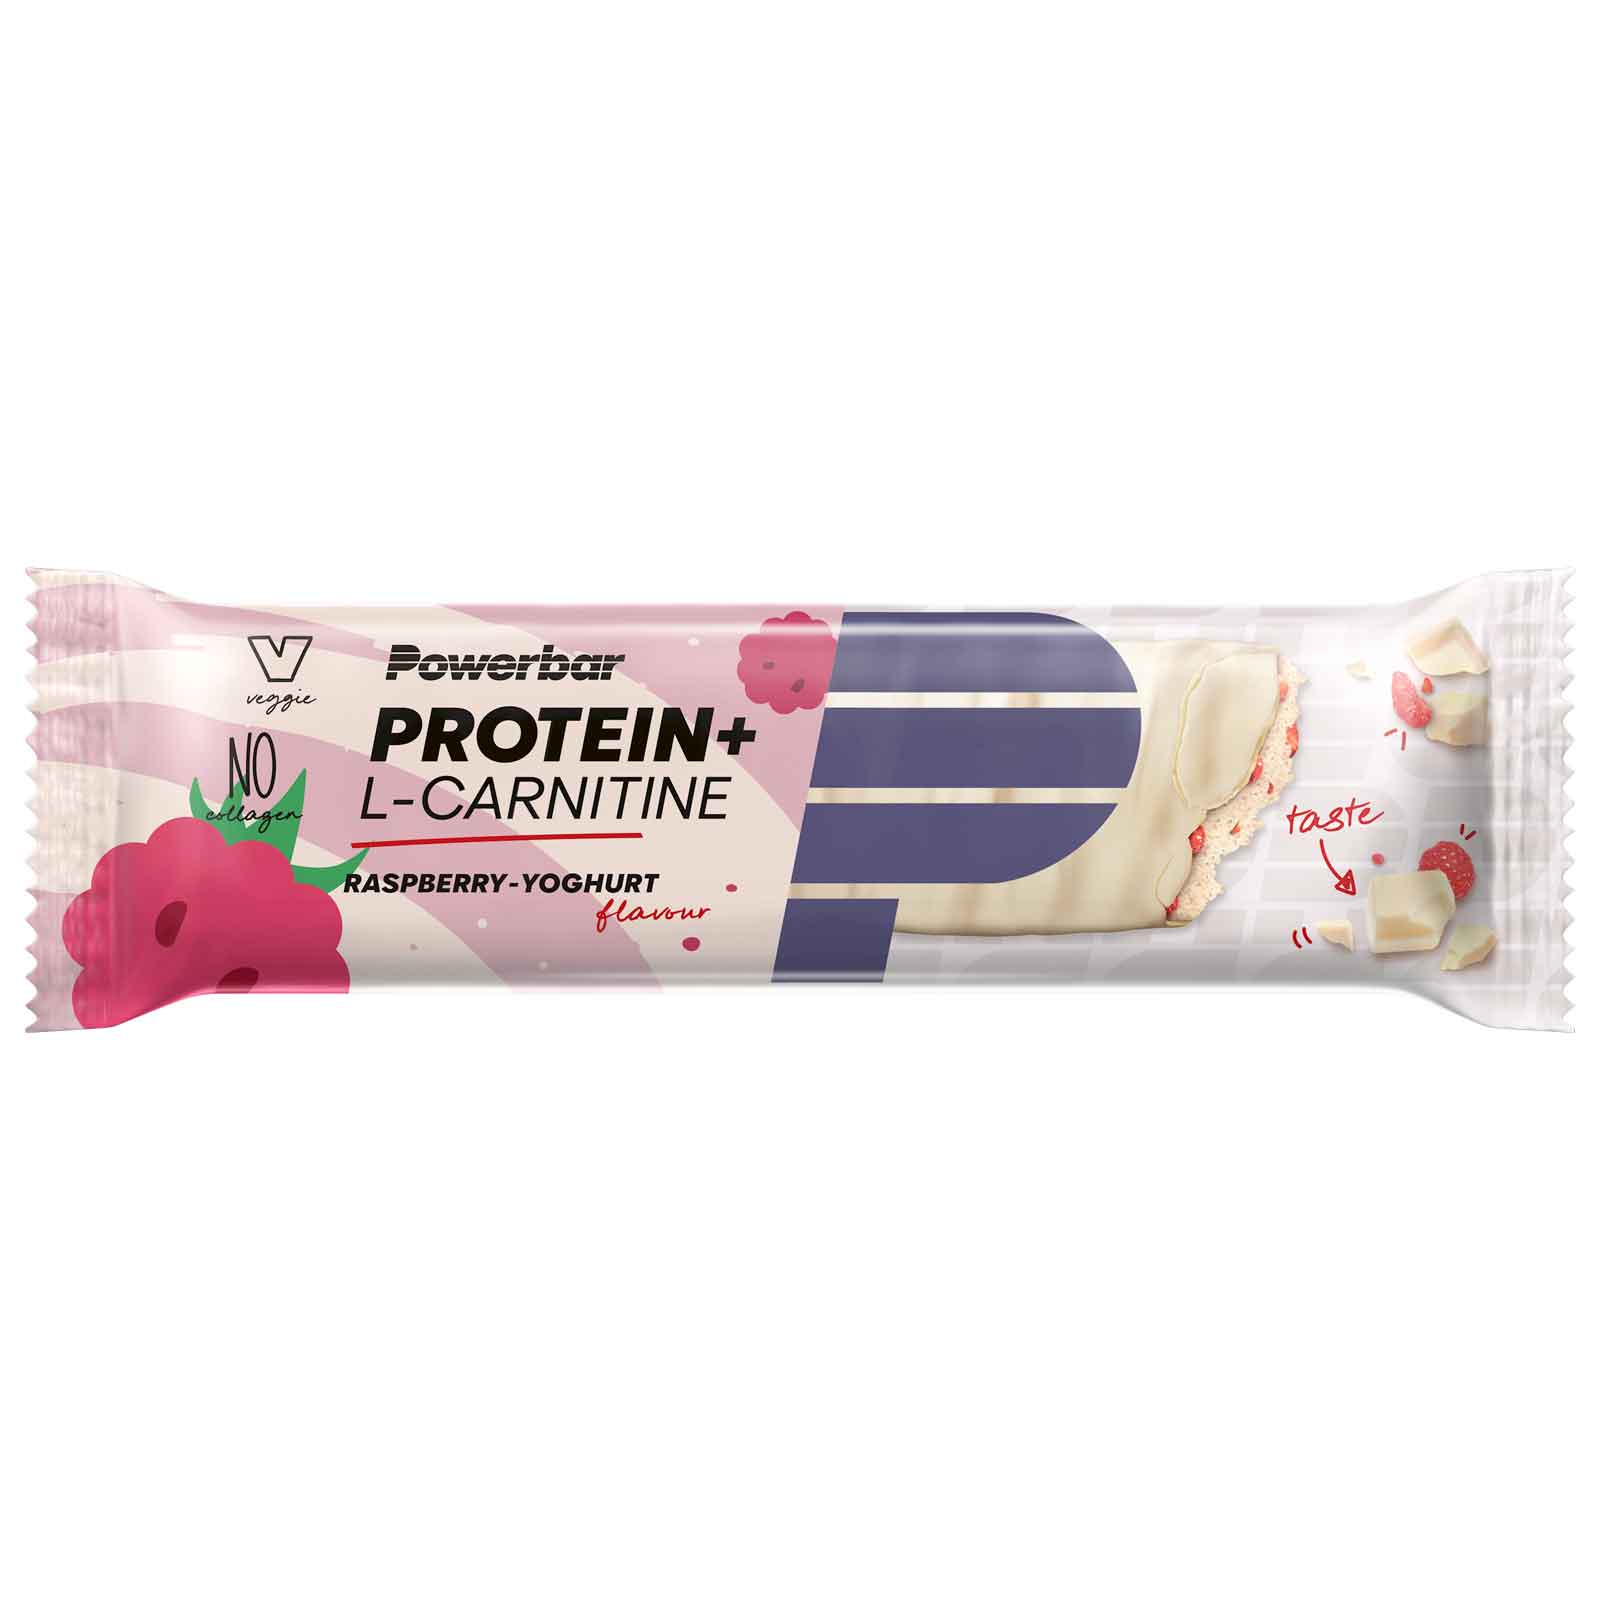 Produktbild von Powerbar Protein Plus L-Carnitine - Eiweiß-Riegel - 3x35g